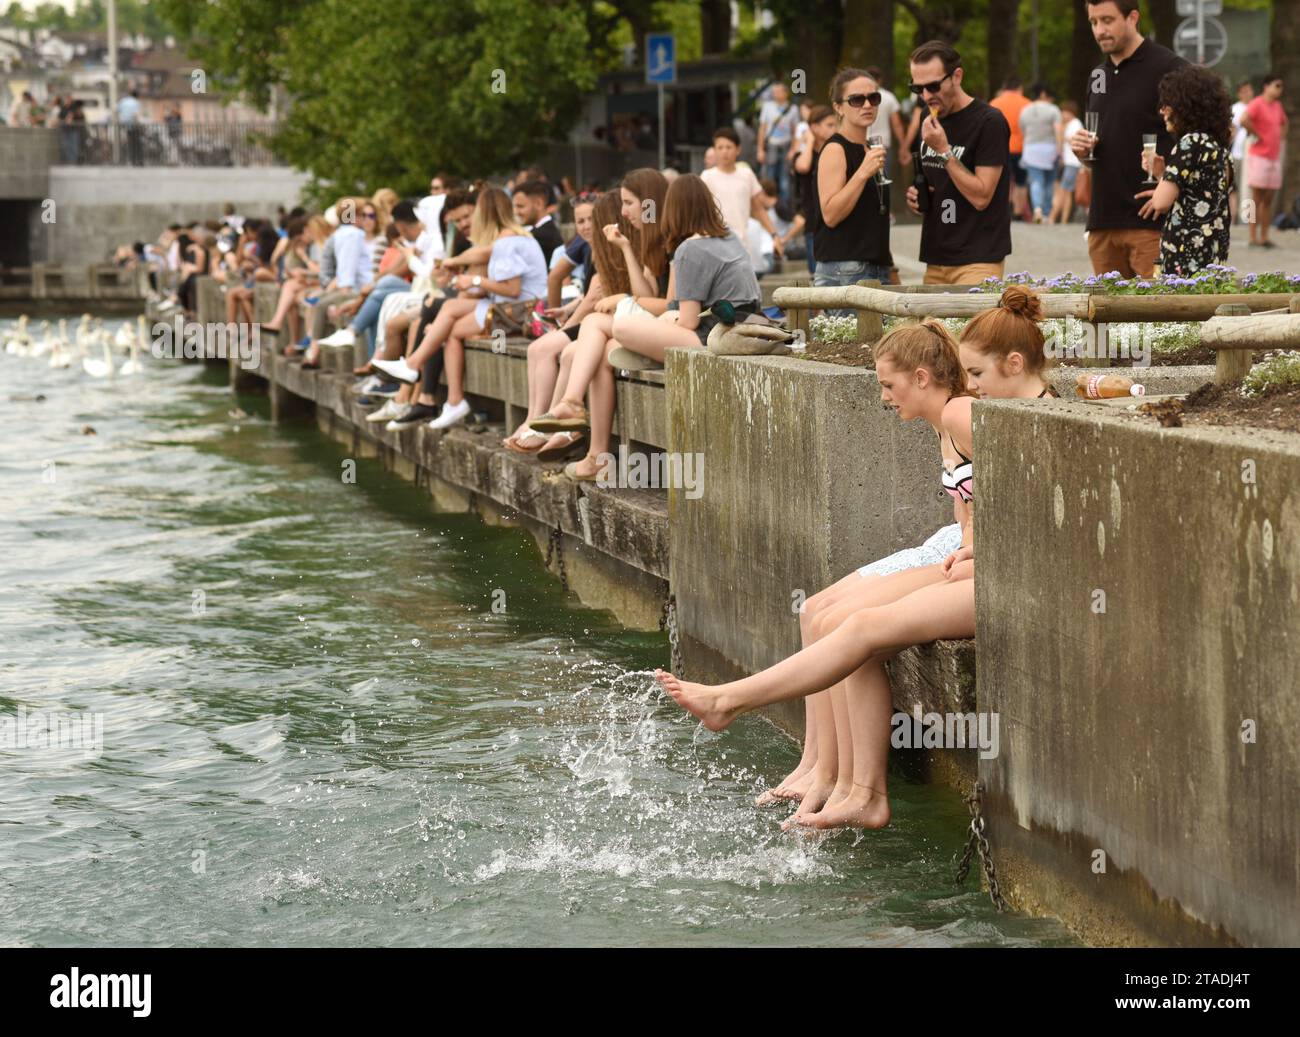 Zurigo, Svizzera - 3 giugno 2017: Gente sul lago di Zurigo. Vita quotidiana a Zurigo. Foto Stock